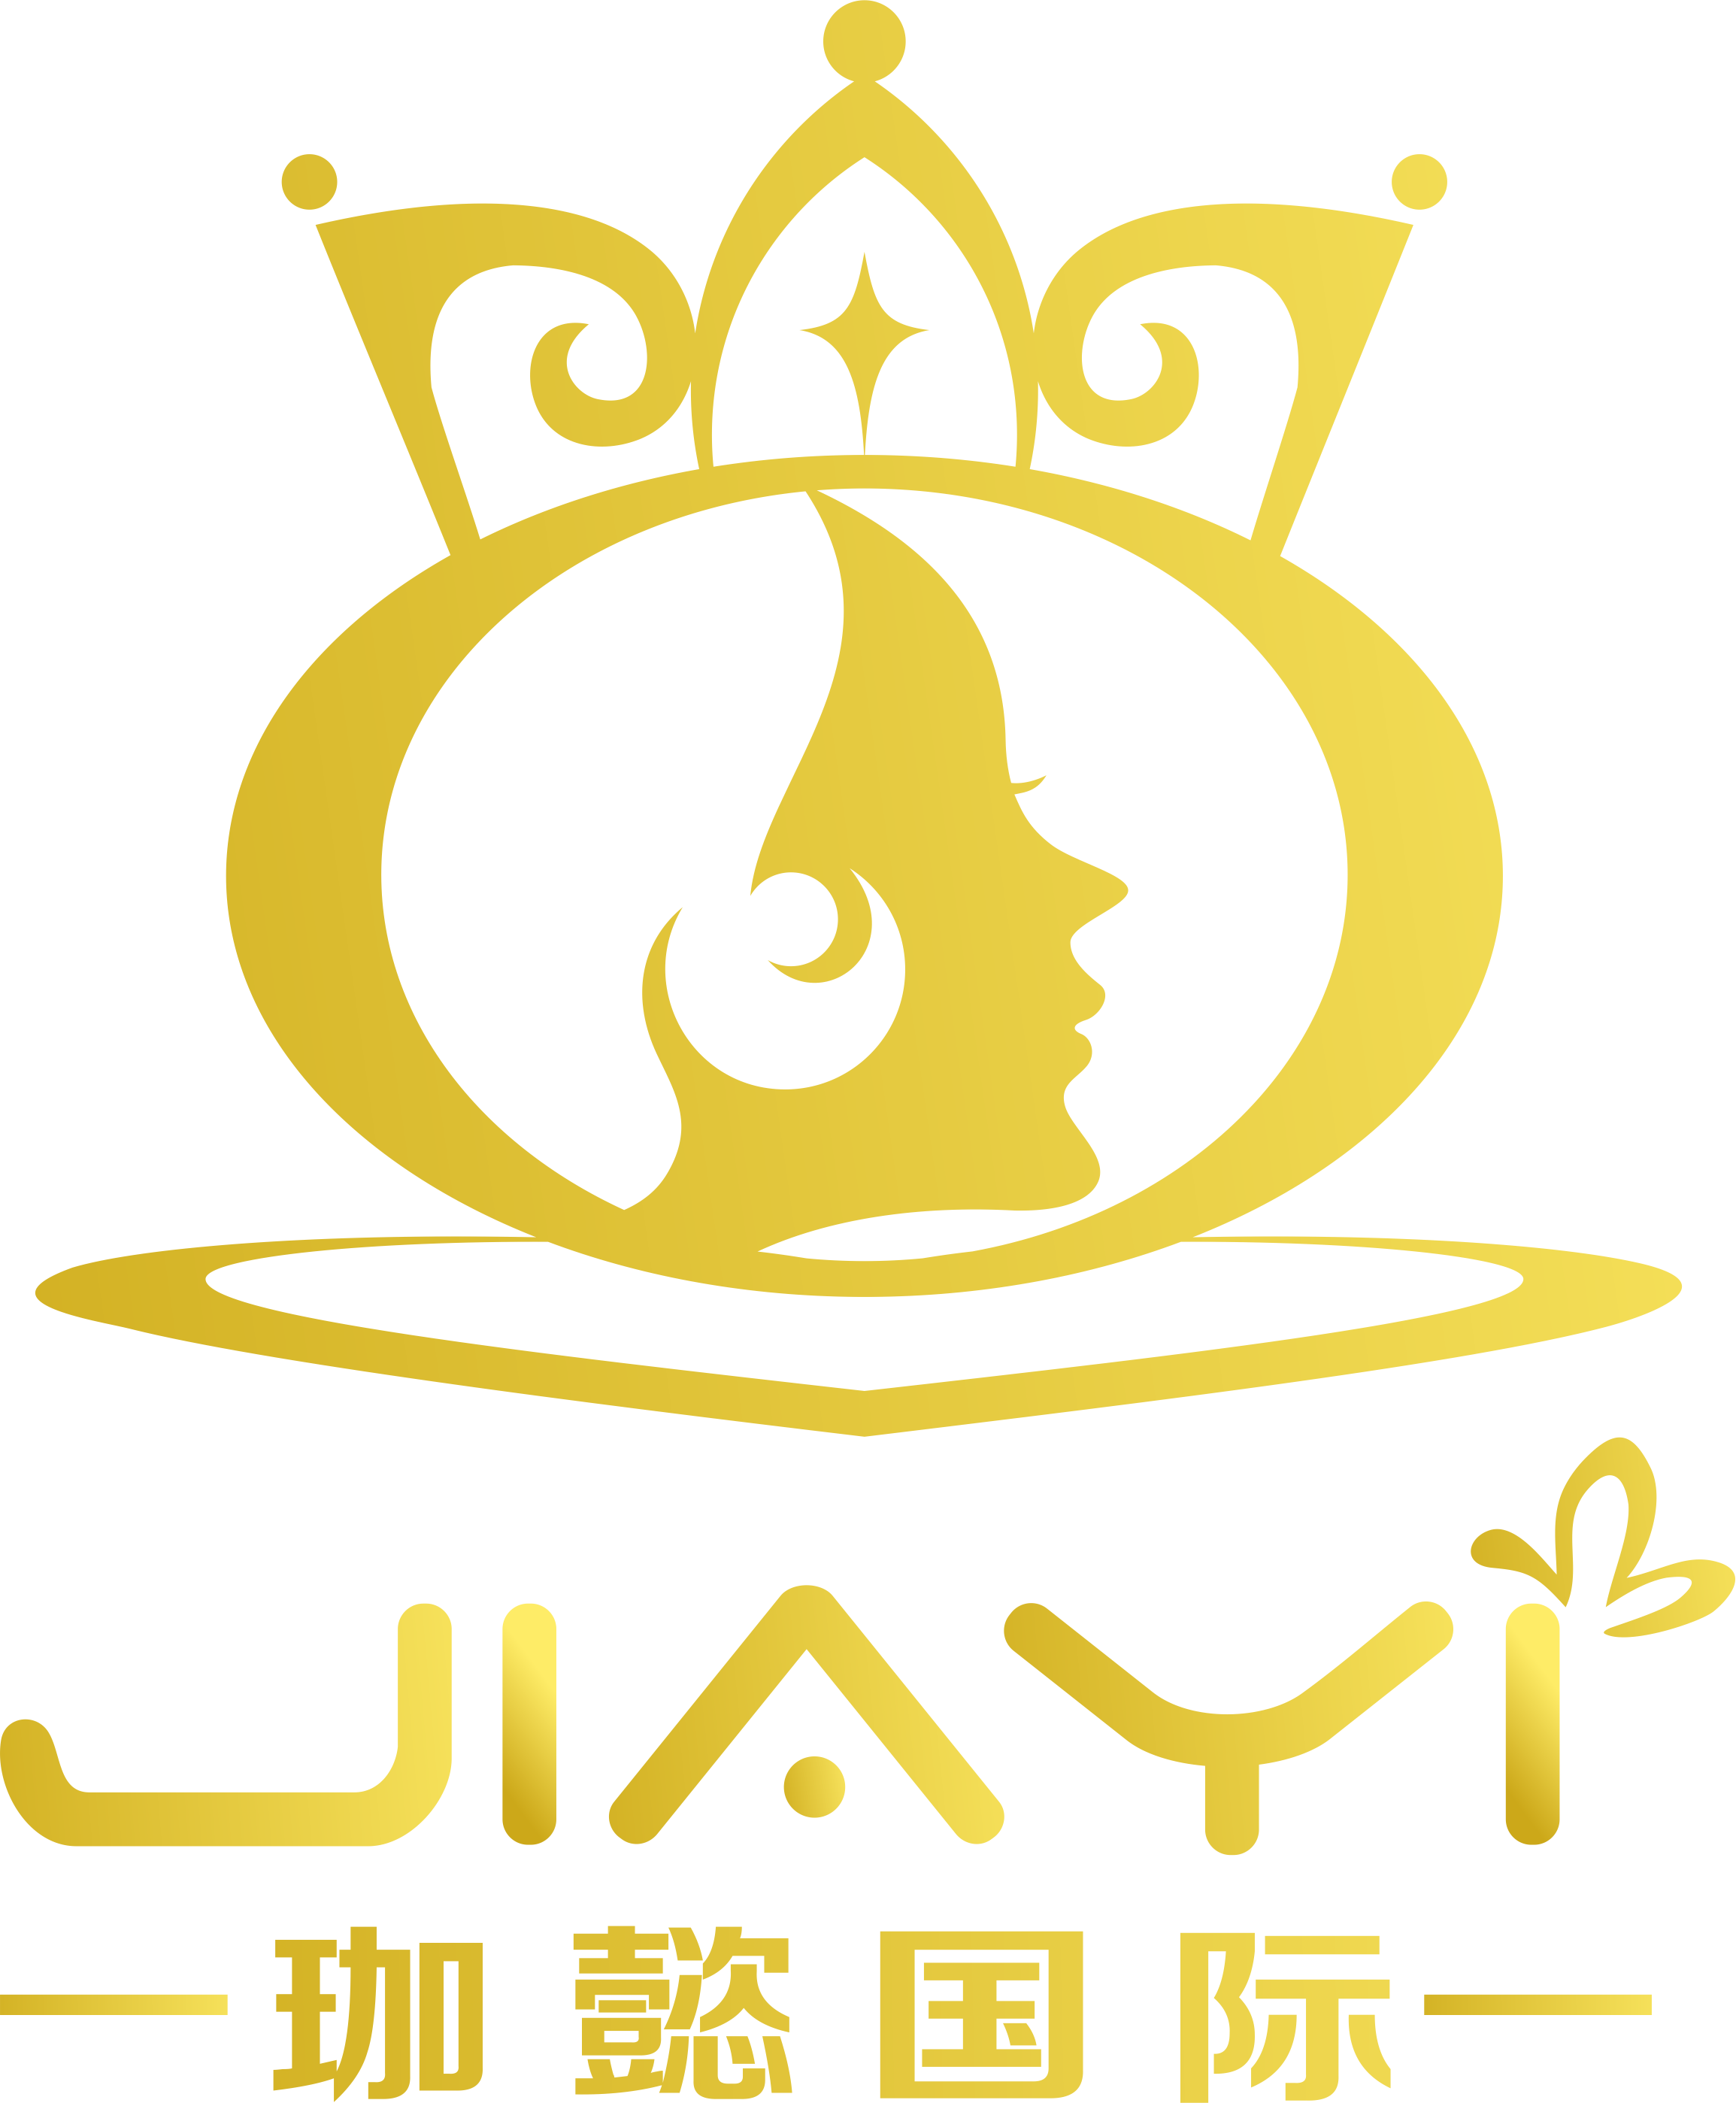 女性形体logo图片图片